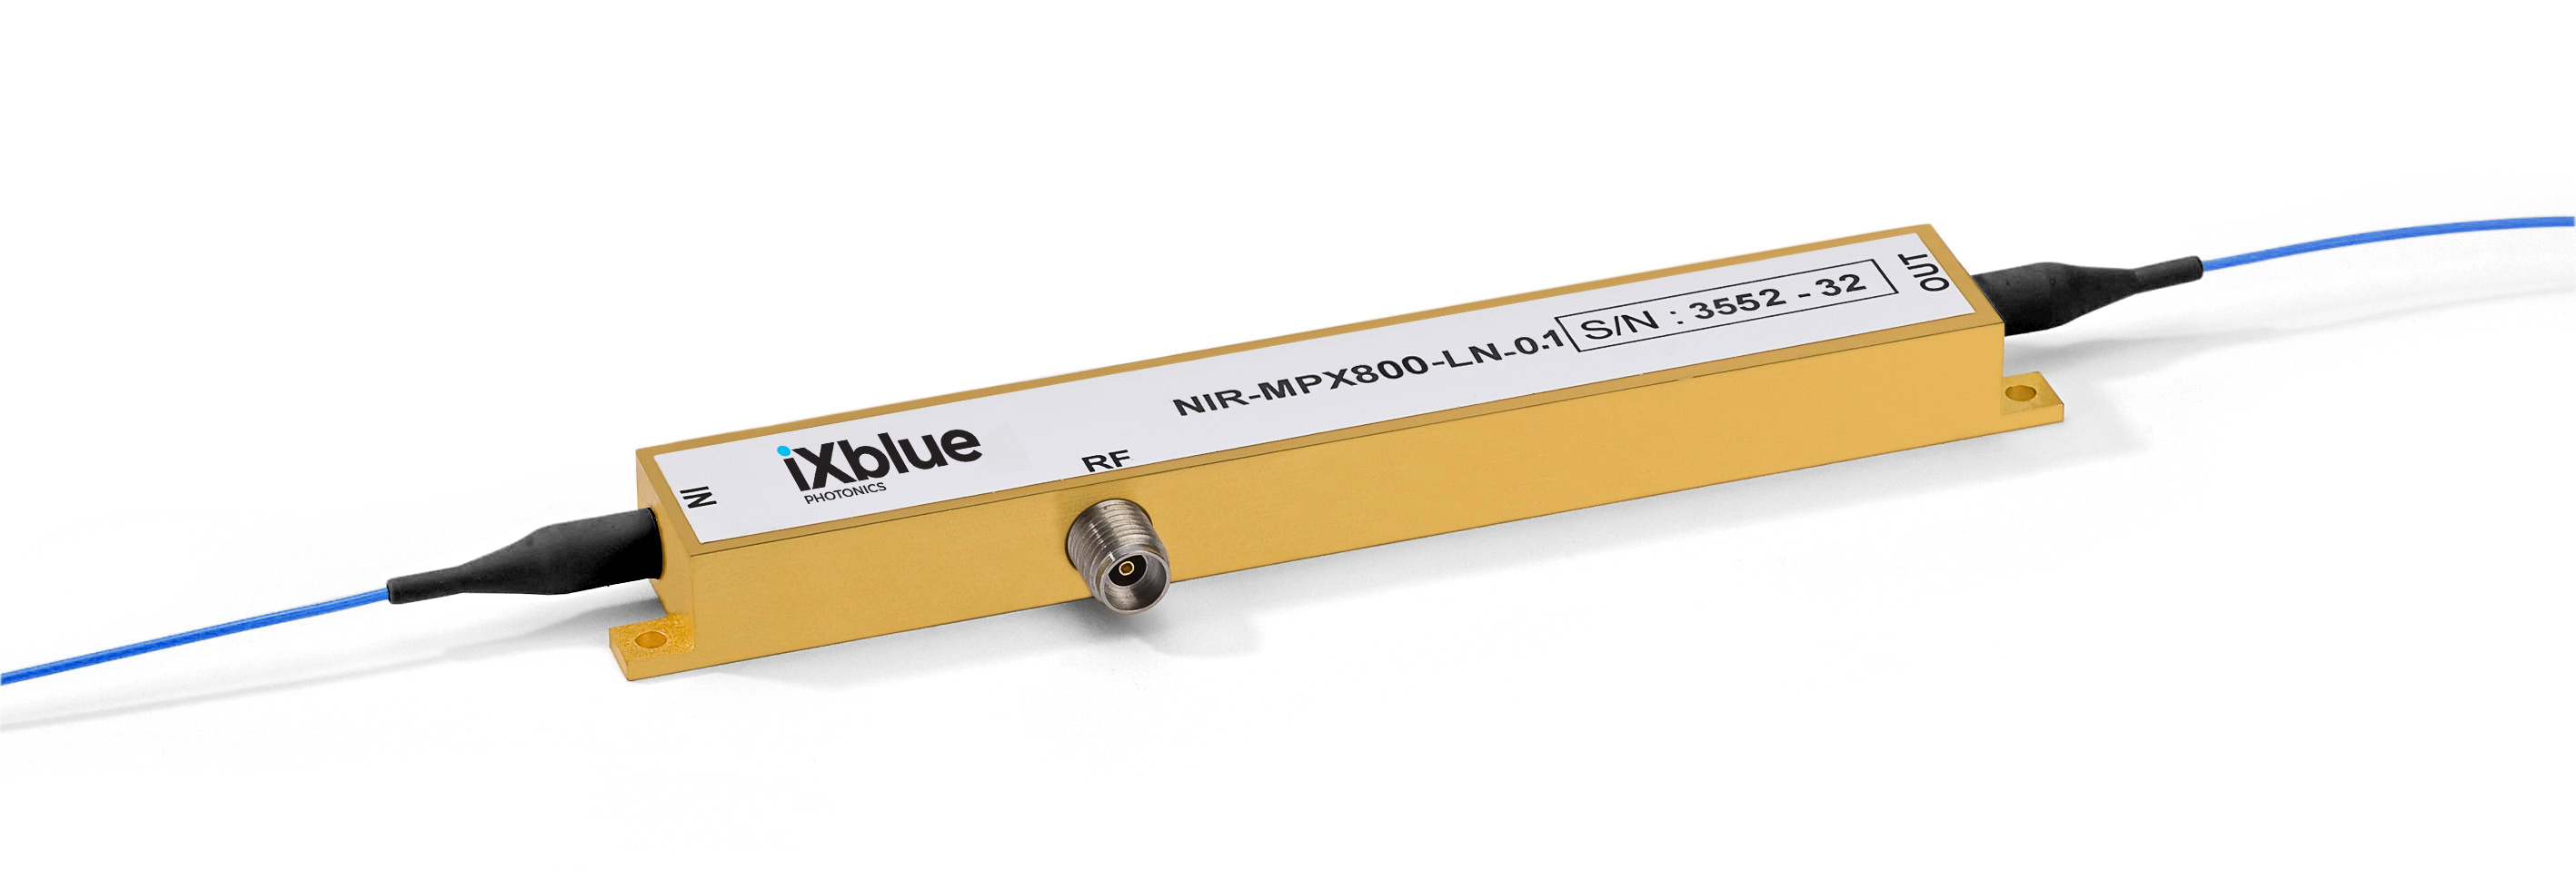 IXBLUE C+L波段 铌酸锂电光相位调制器